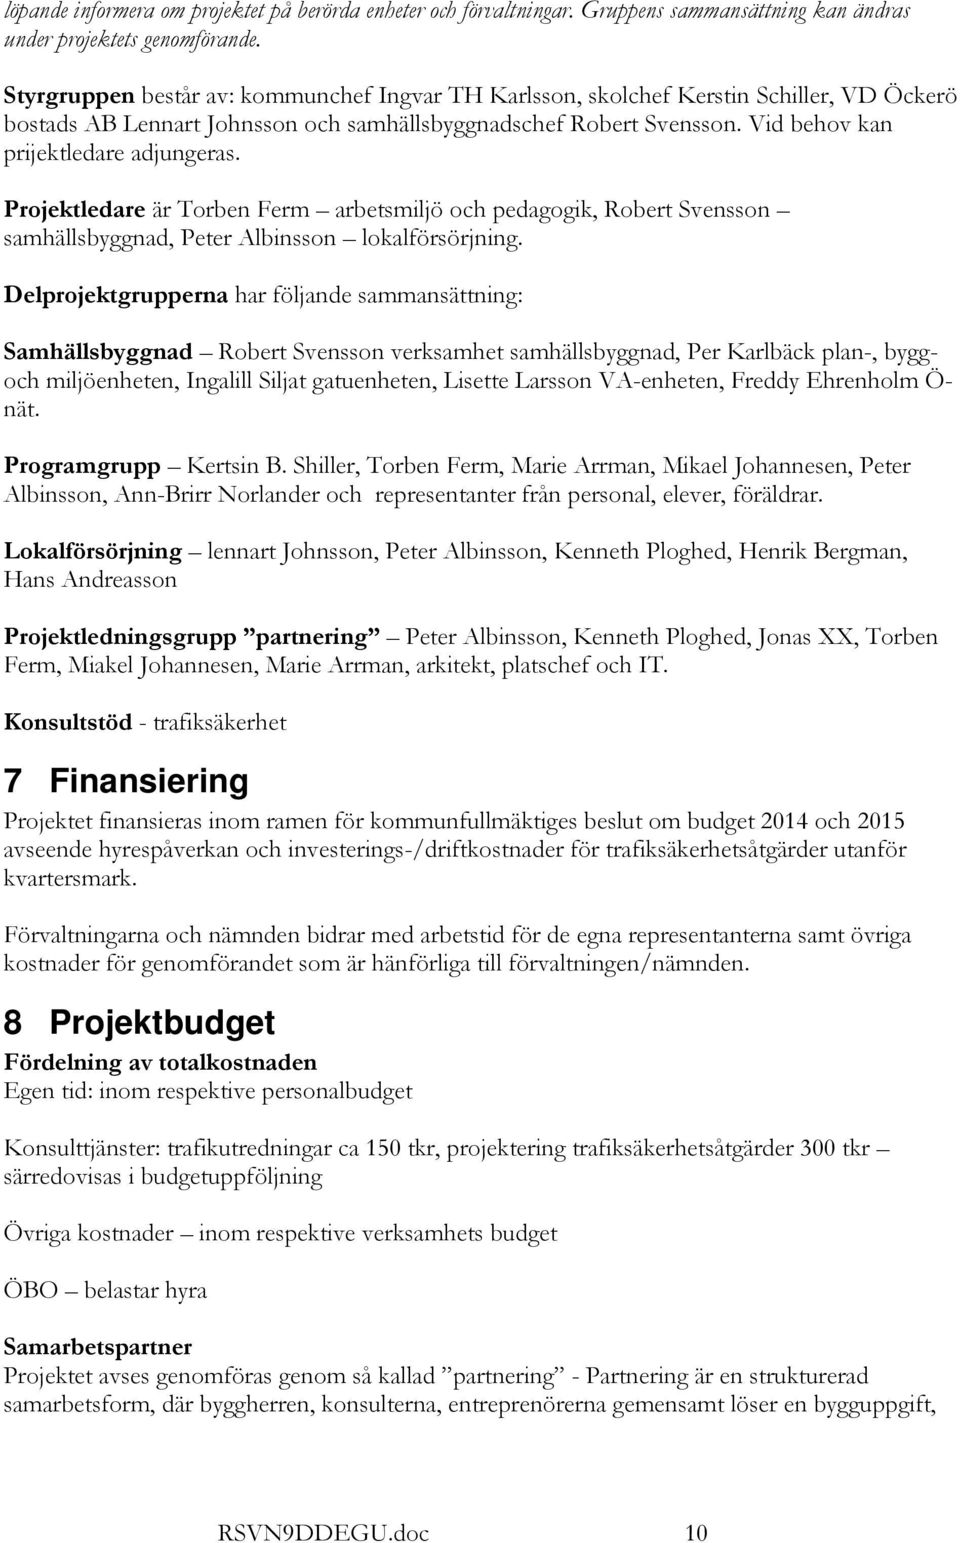 Projektledare är Torben Ferm arbetsmiljö och pedagogik, Robert Svensson samhällsbyggnad, Peter Albinsson lokalförsörjning.